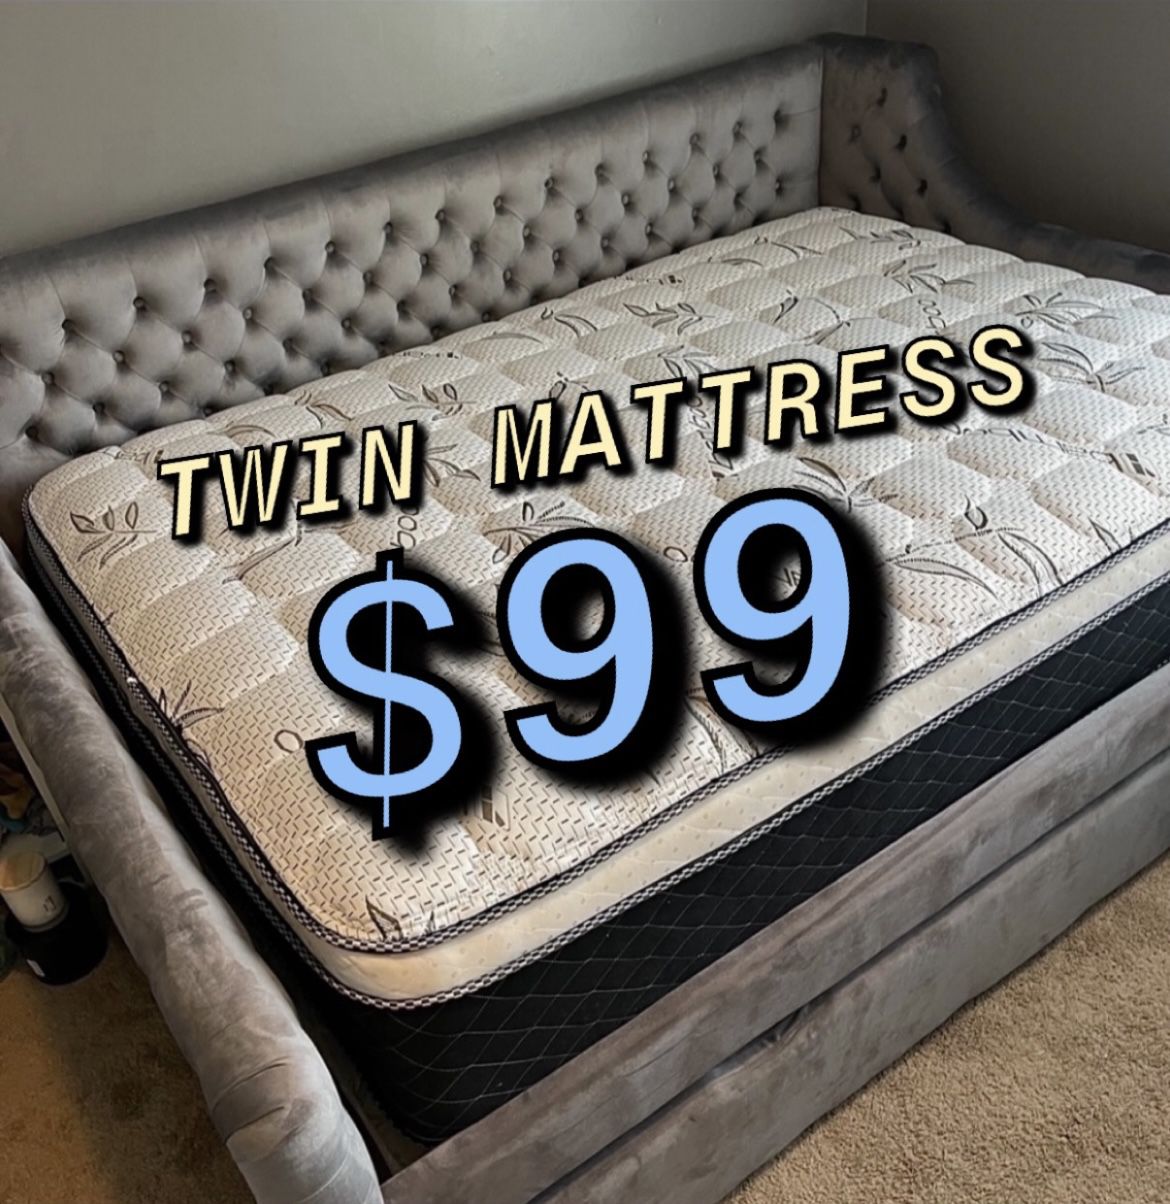 New Twin Mattress $100